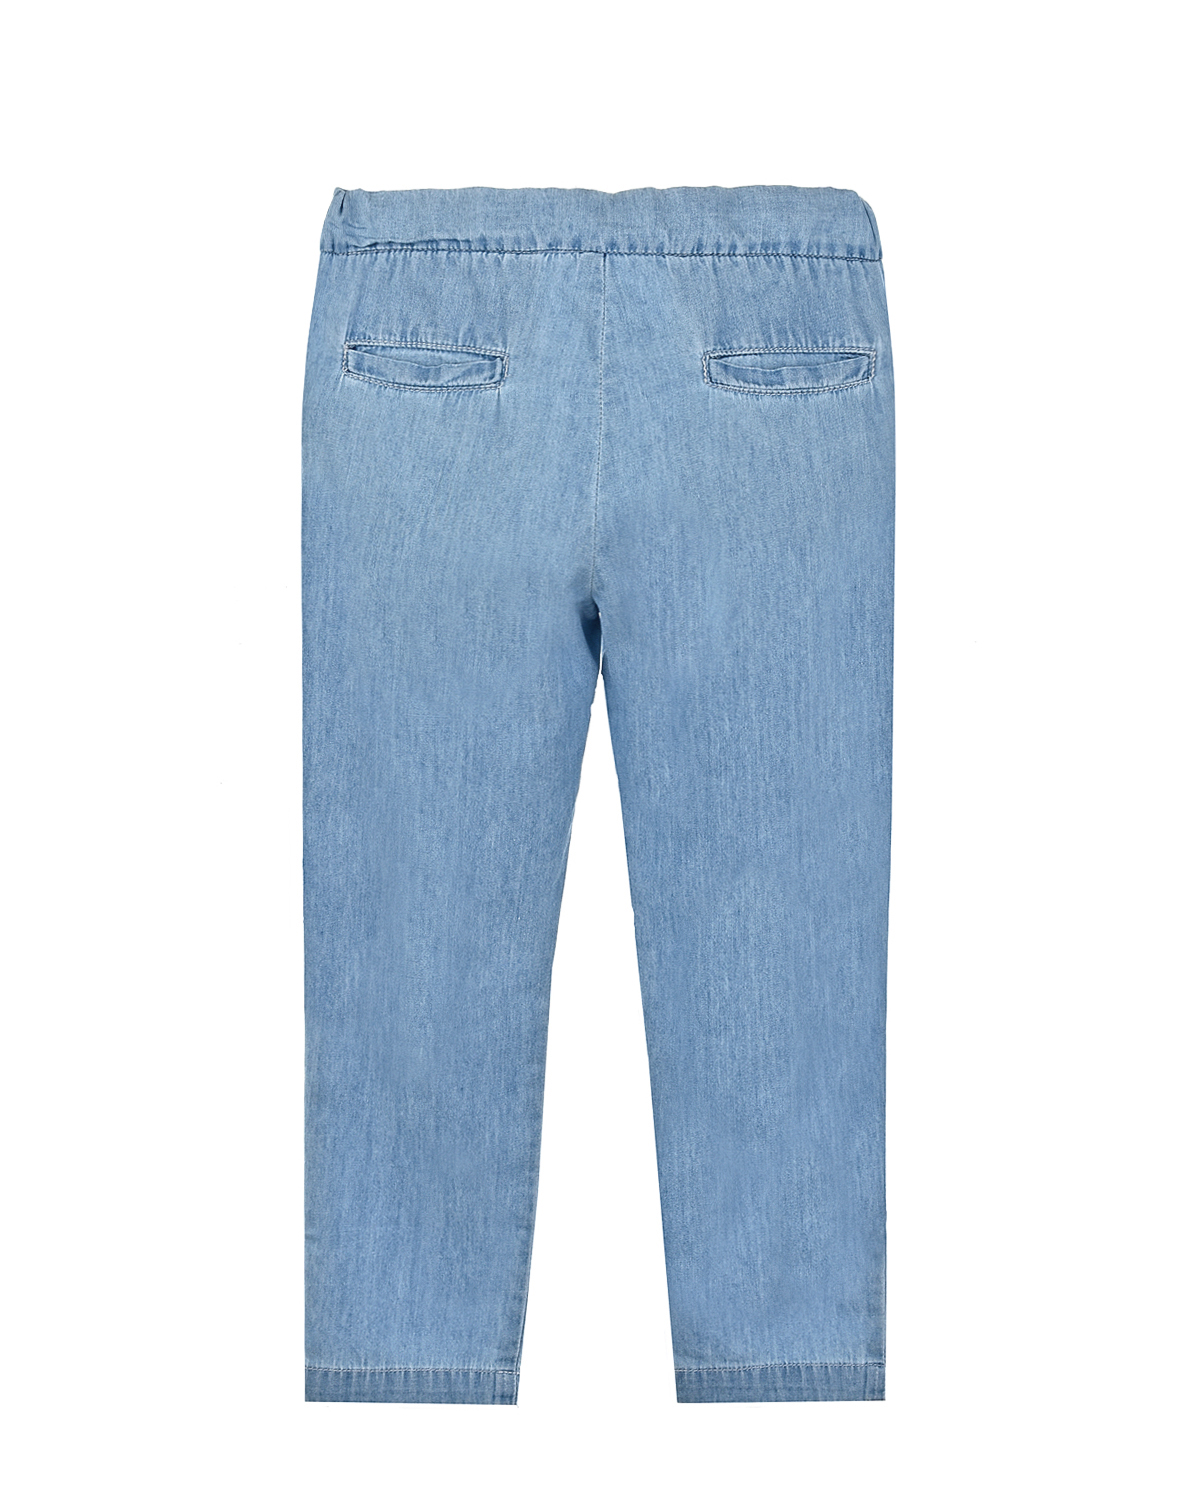 Джинсовые брюки с поясом на резинке Emile et Ida детские, размер 80, цвет голубой - фото 2